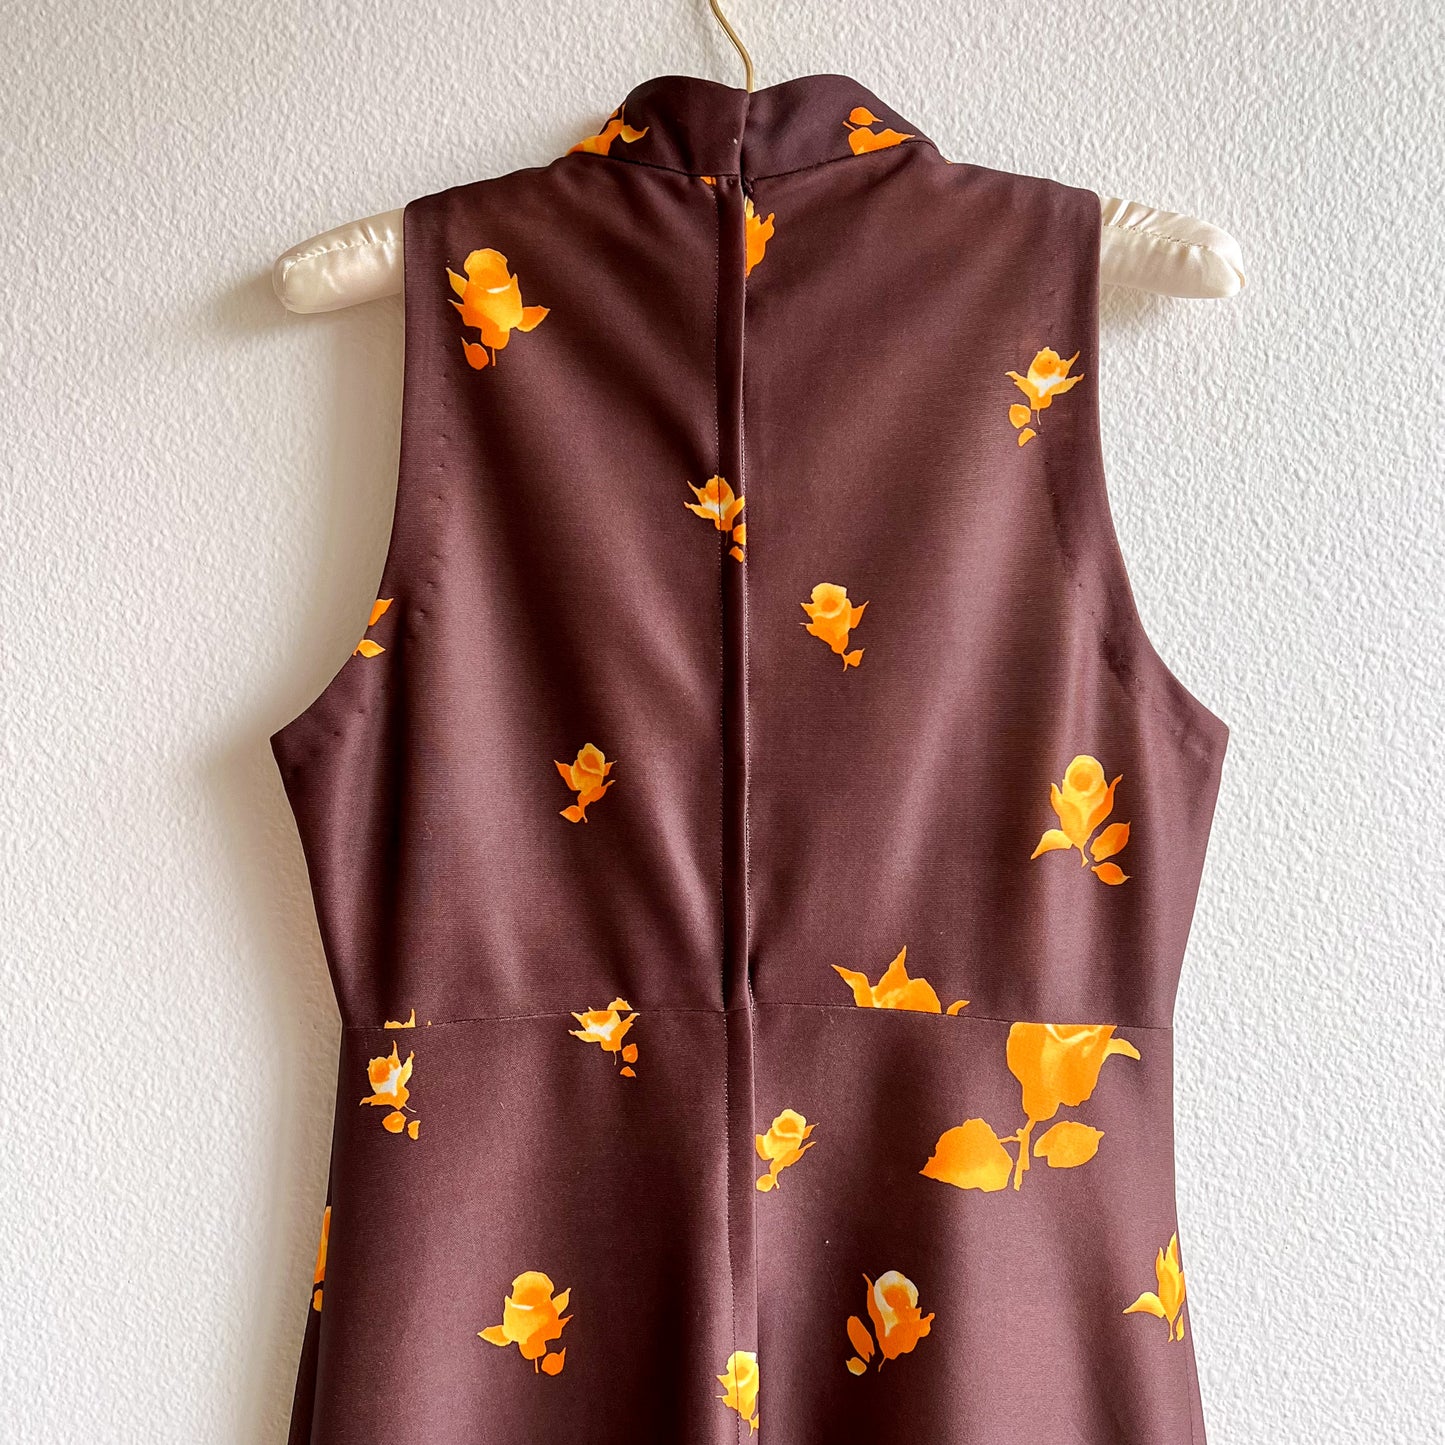 1970s Brown and Orange Roses Maxi Dress (M)